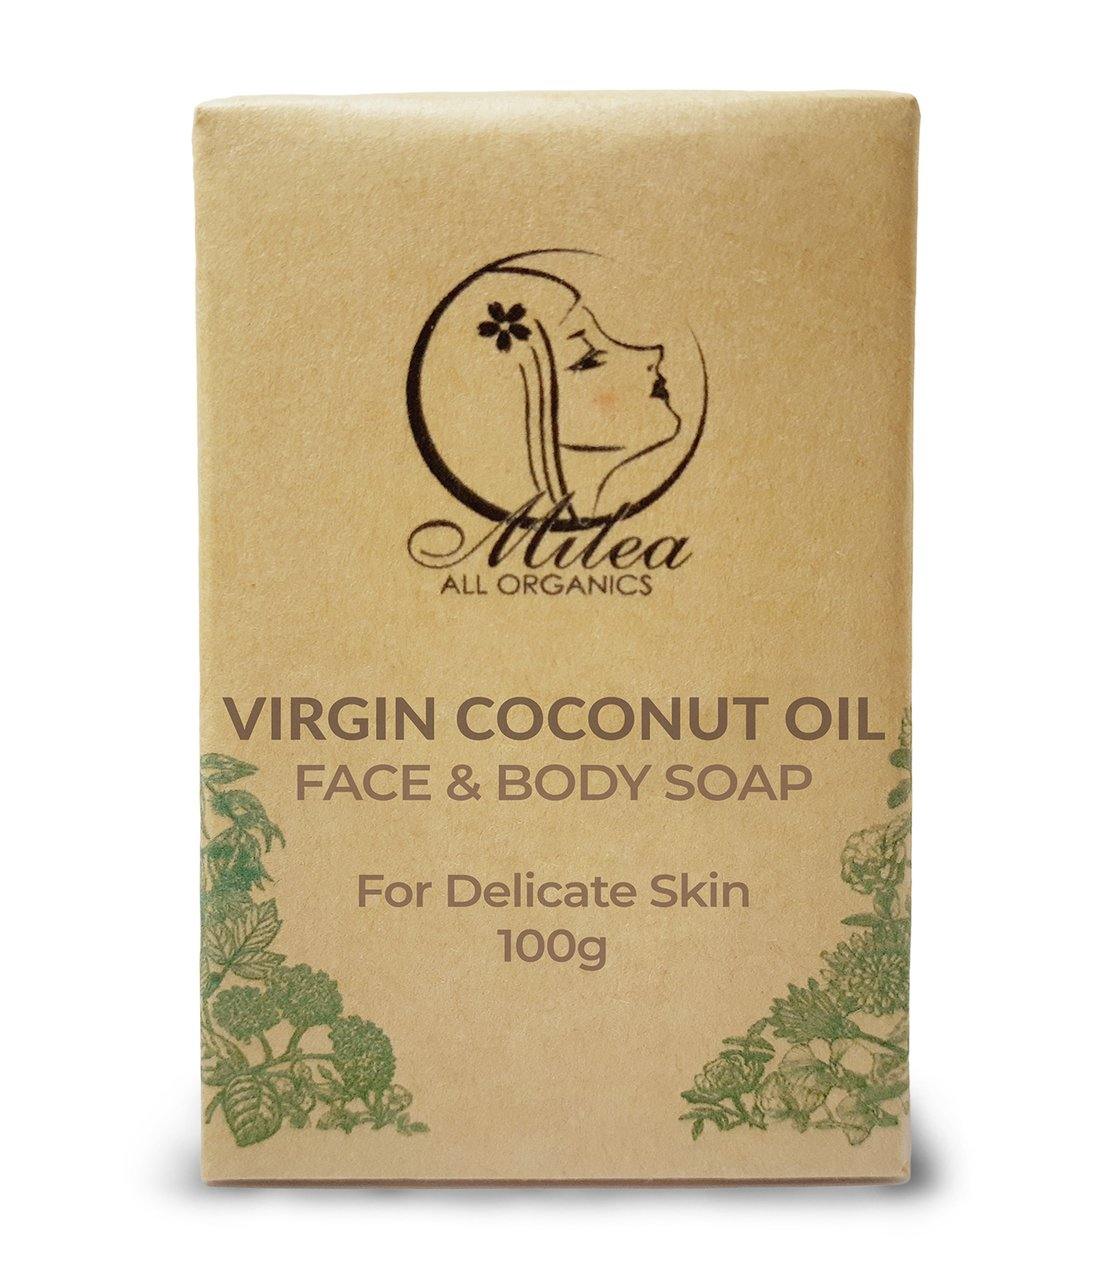 Virgin Coconut Oil with Coco Cream Soap - Milea All Organics - Philippines